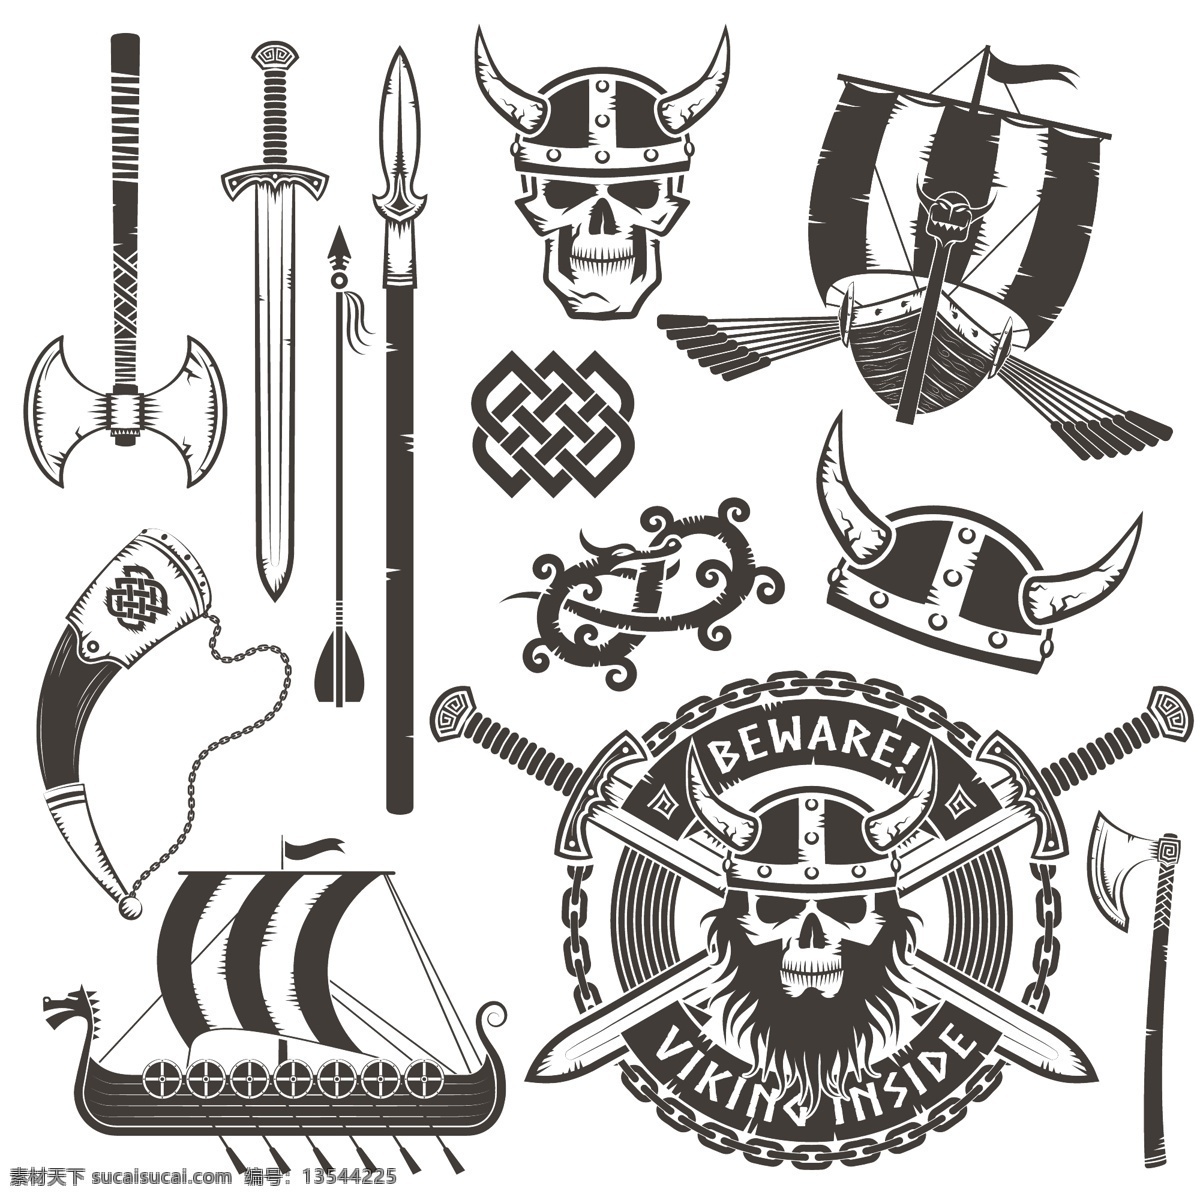 海盗主题矢量 海盗头盔 牛角帽子 海盗 北欧海盗标志 海盗标志 标贴标签 矢量素材 船长 海盗船